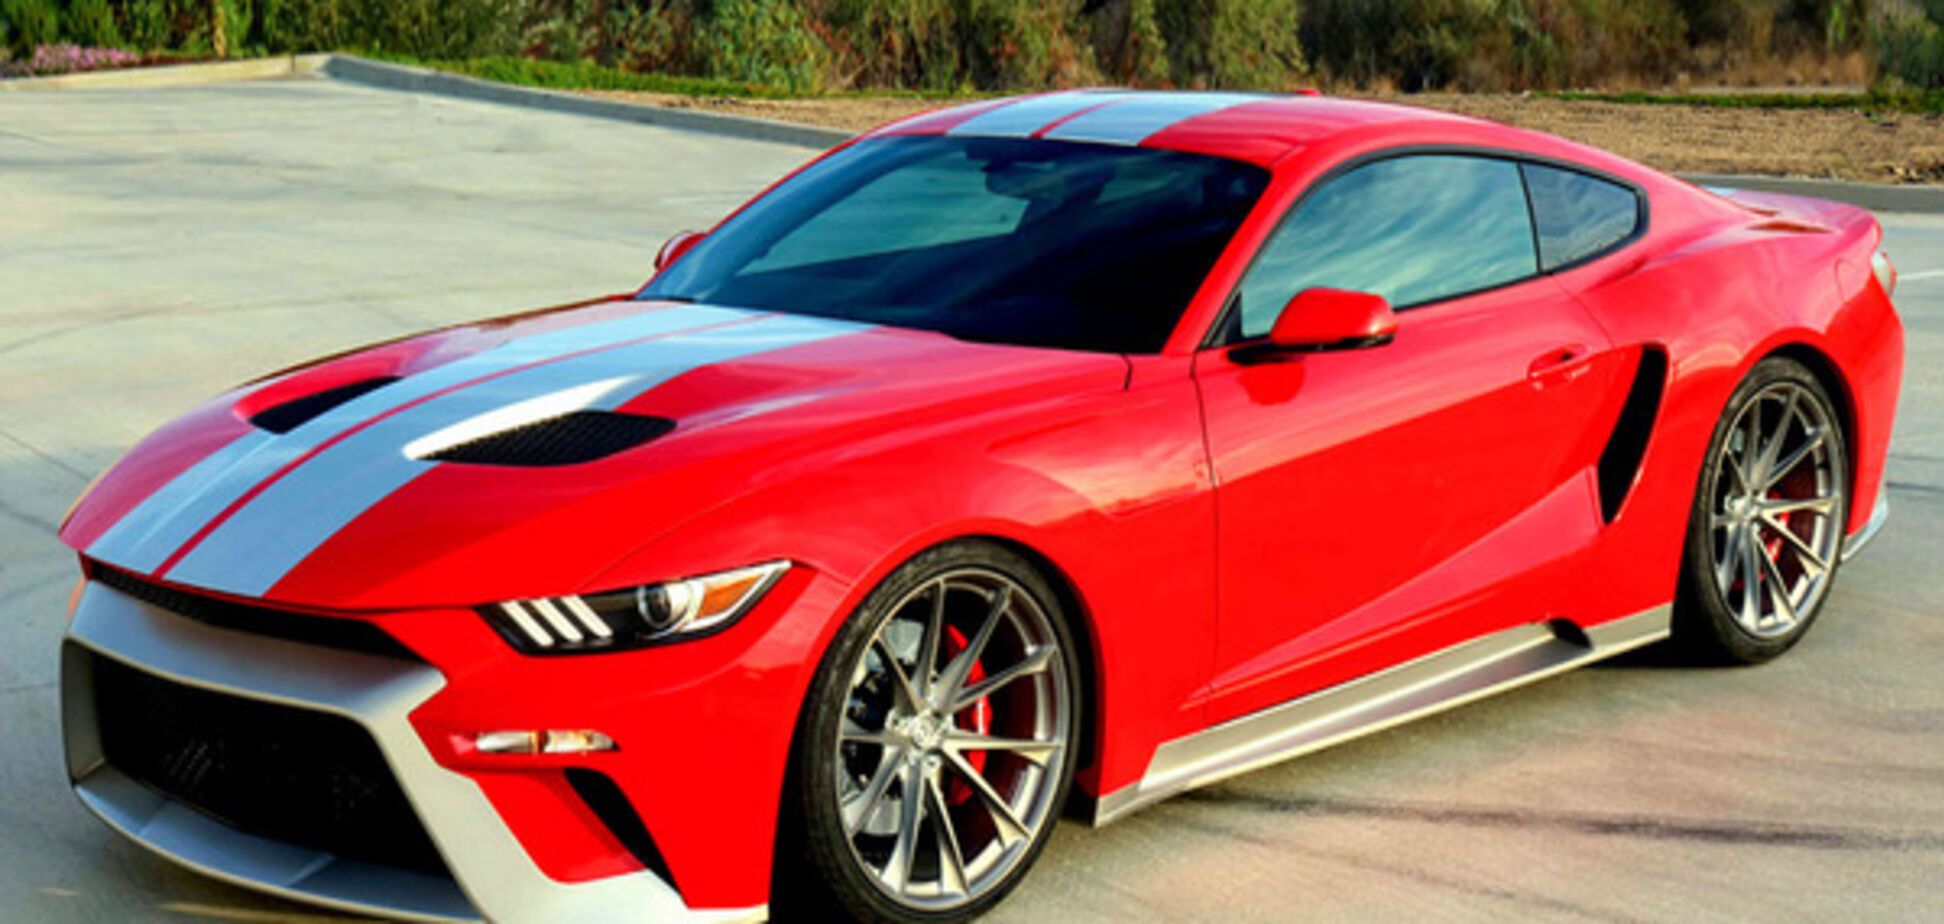 Гибрид купе Mustang и суперкара GT от компании Zero to 60 Design